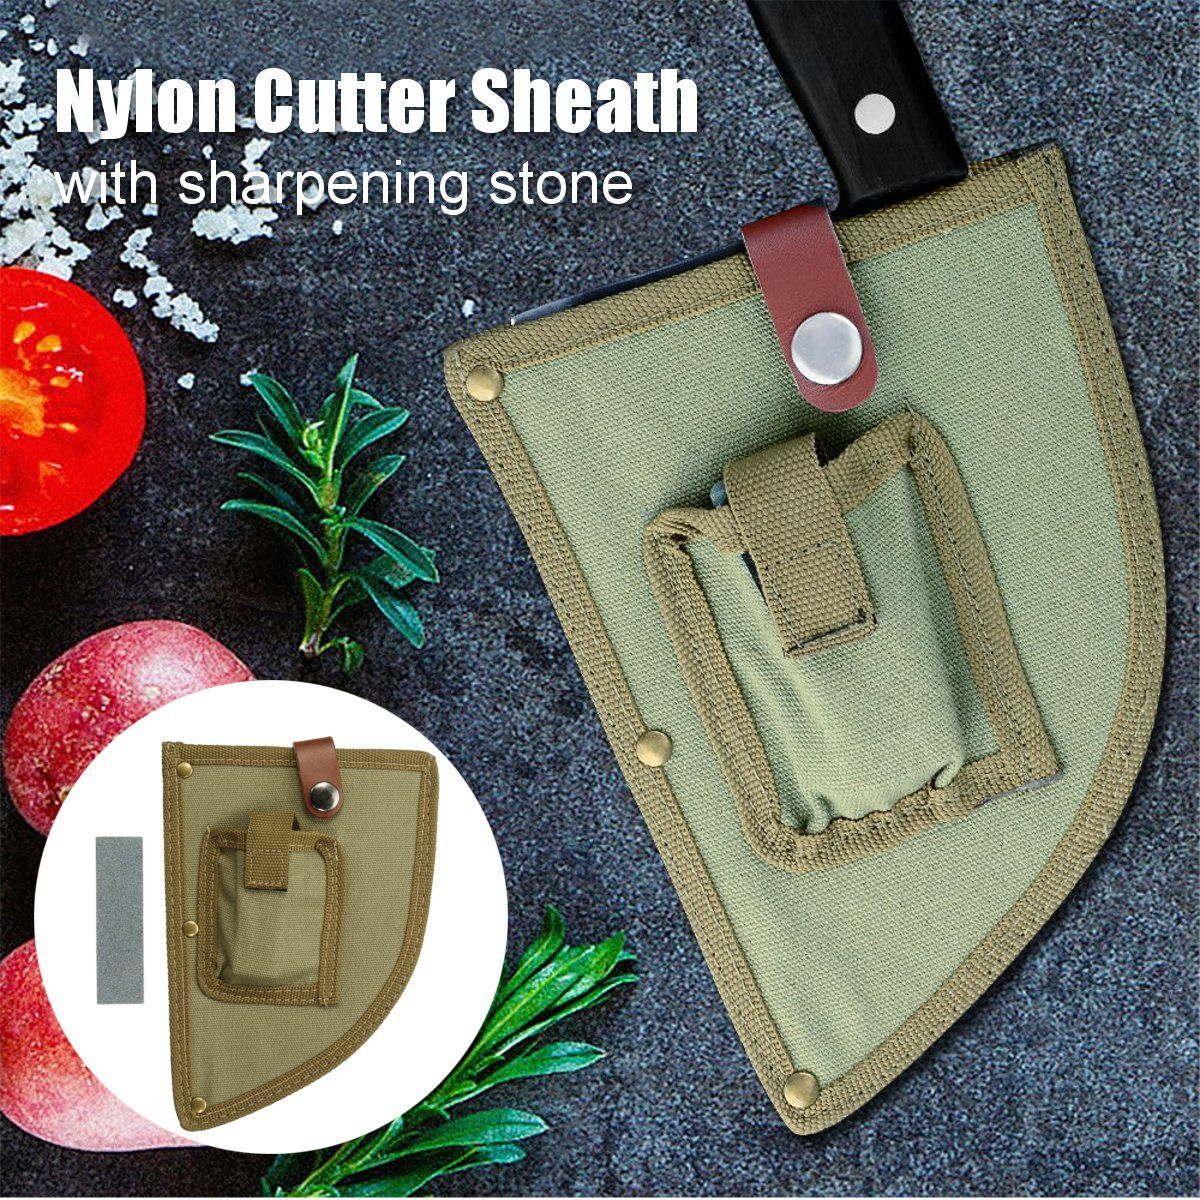 Nylon-Cutter-Sheath-Storage-Bag-With-Mini-Sharpen-Stone-Kitchen-Chef-Tool-1658770